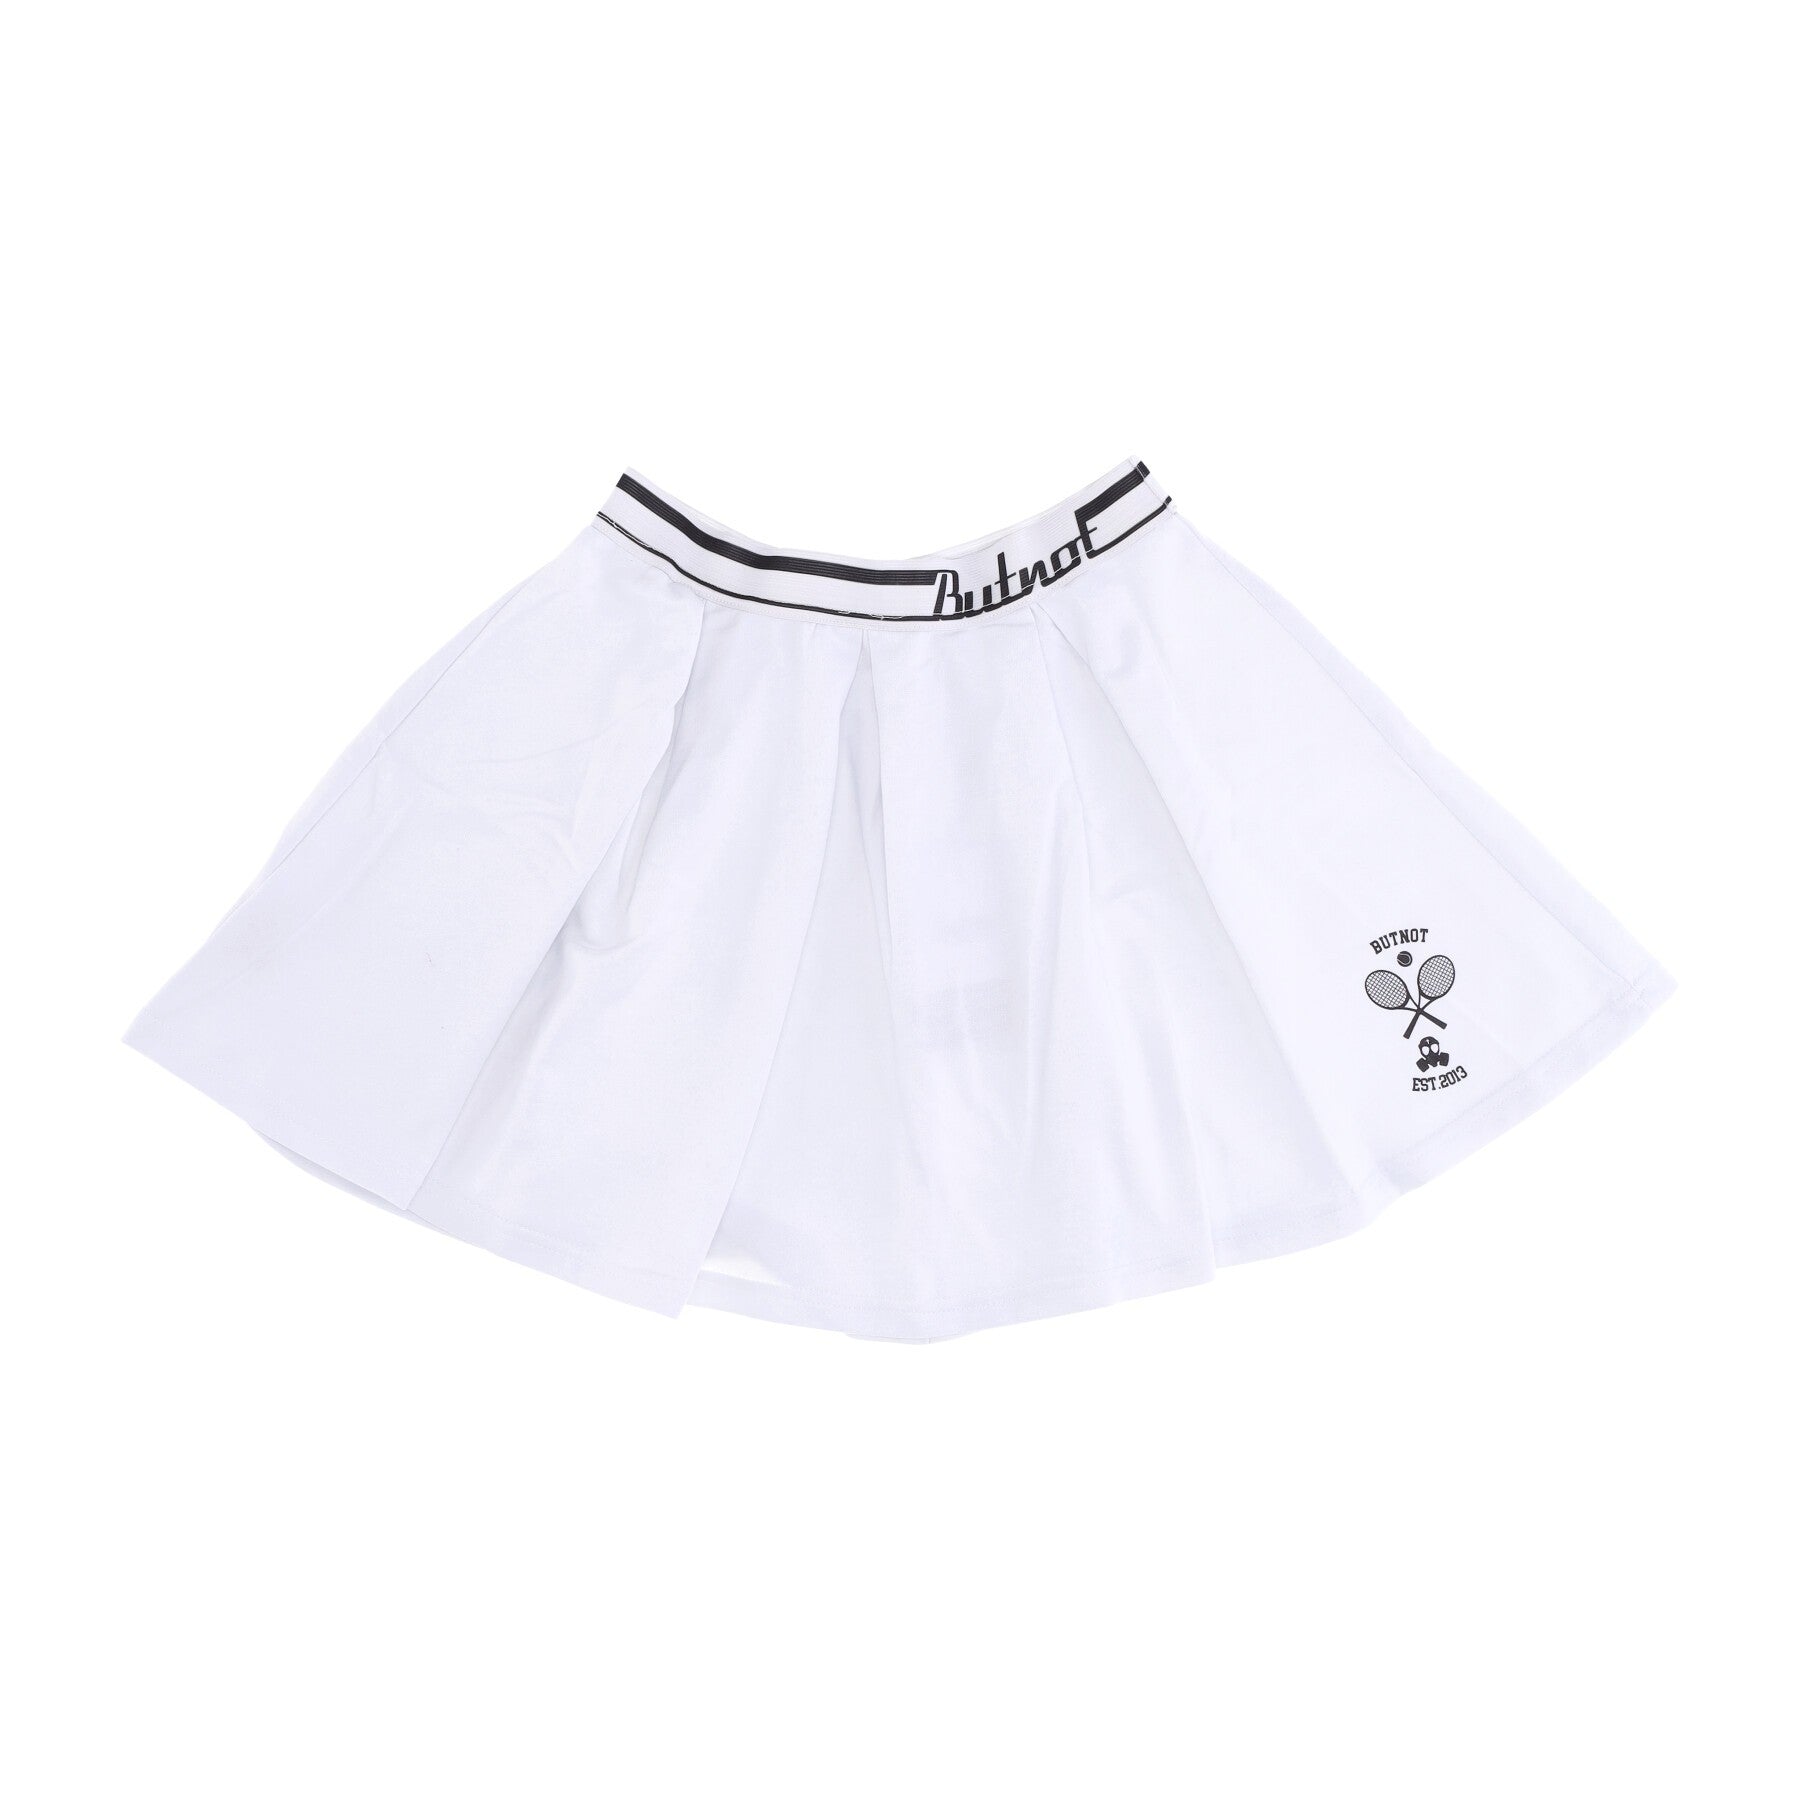 Short Skirt Women's Tennis Skirt White